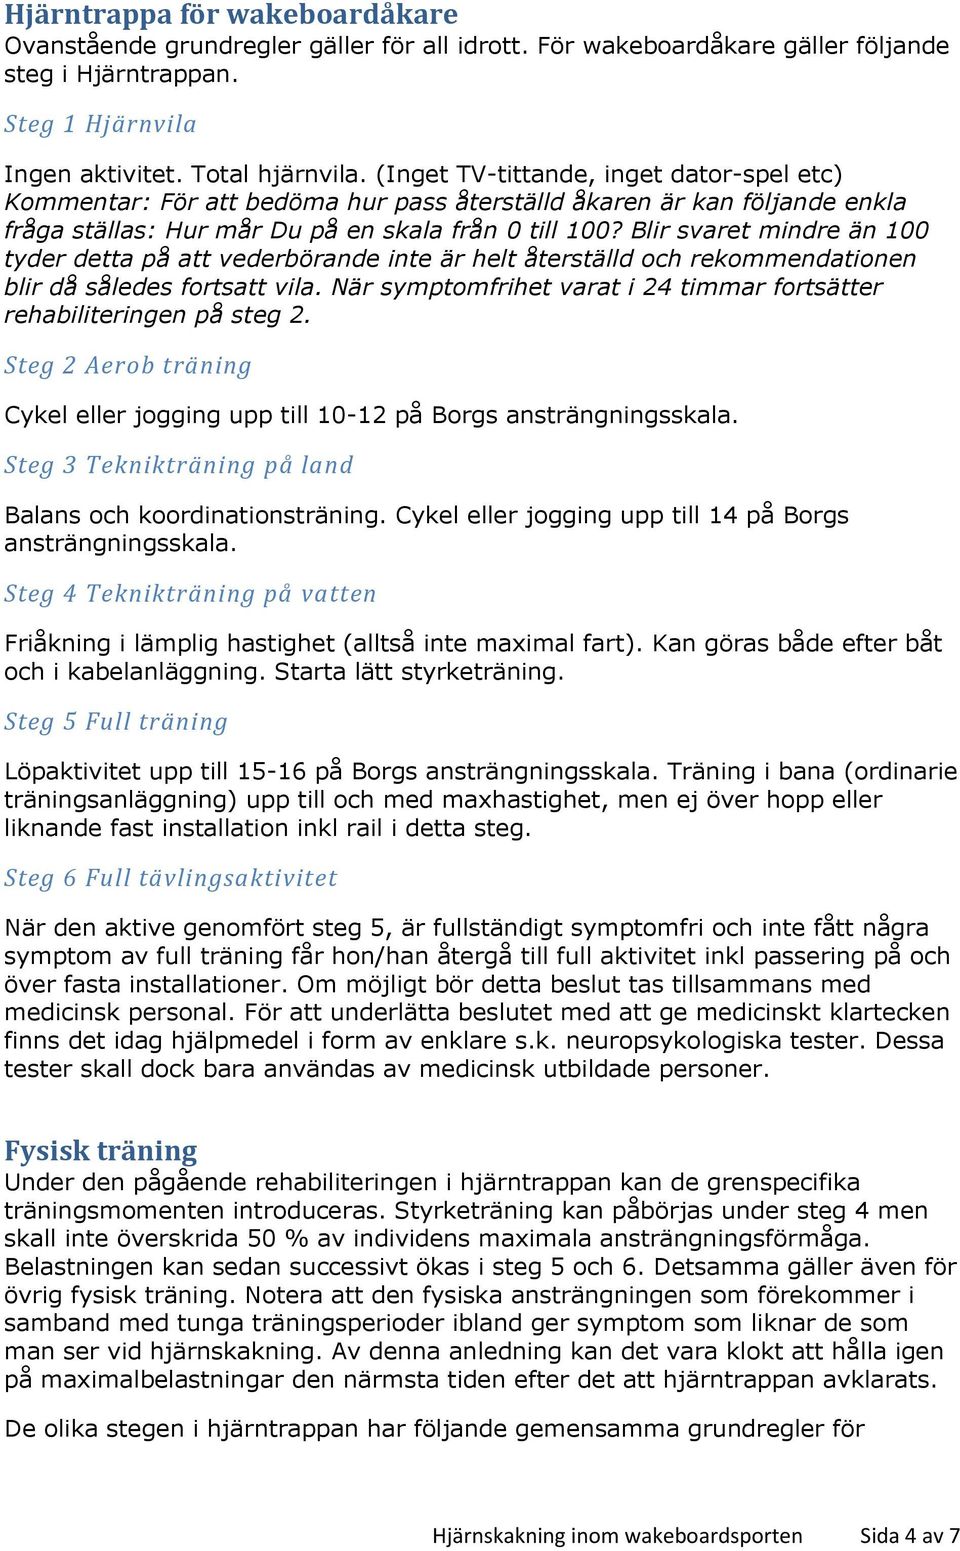 HJÄ RNSKÄKNING INOM WÄKEBOÄRDSPORTEN - PDF Free Download